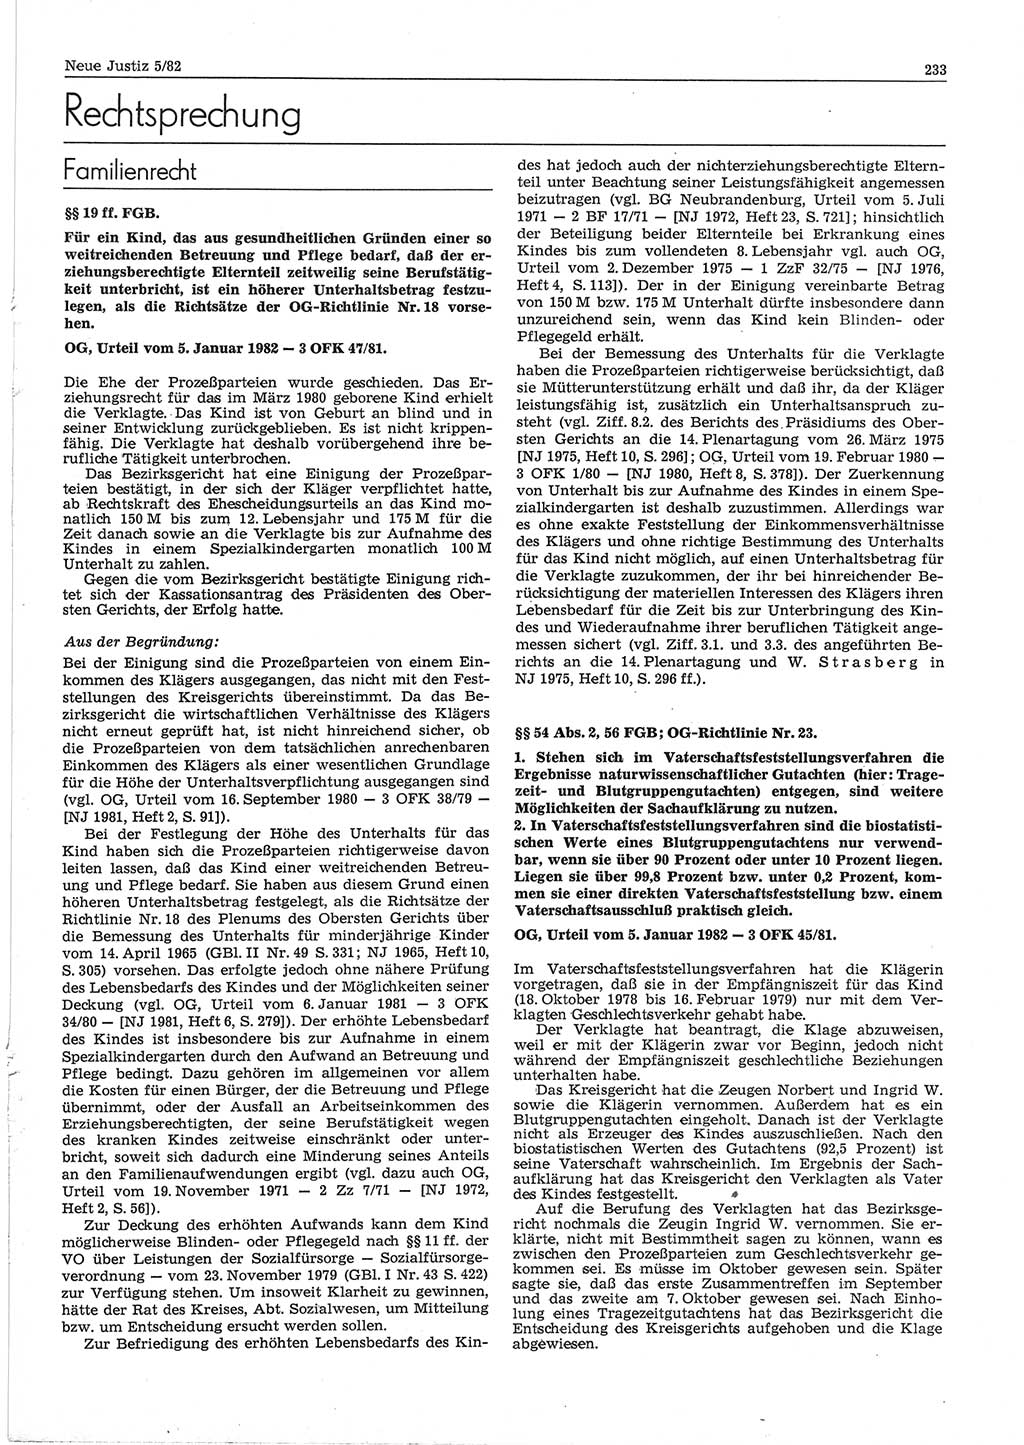 Neue Justiz (NJ), Zeitschrift für sozialistisches Recht und Gesetzlichkeit [Deutsche Demokratische Republik (DDR)], 36. Jahrgang 1982, Seite 233 (NJ DDR 1982, S. 233)